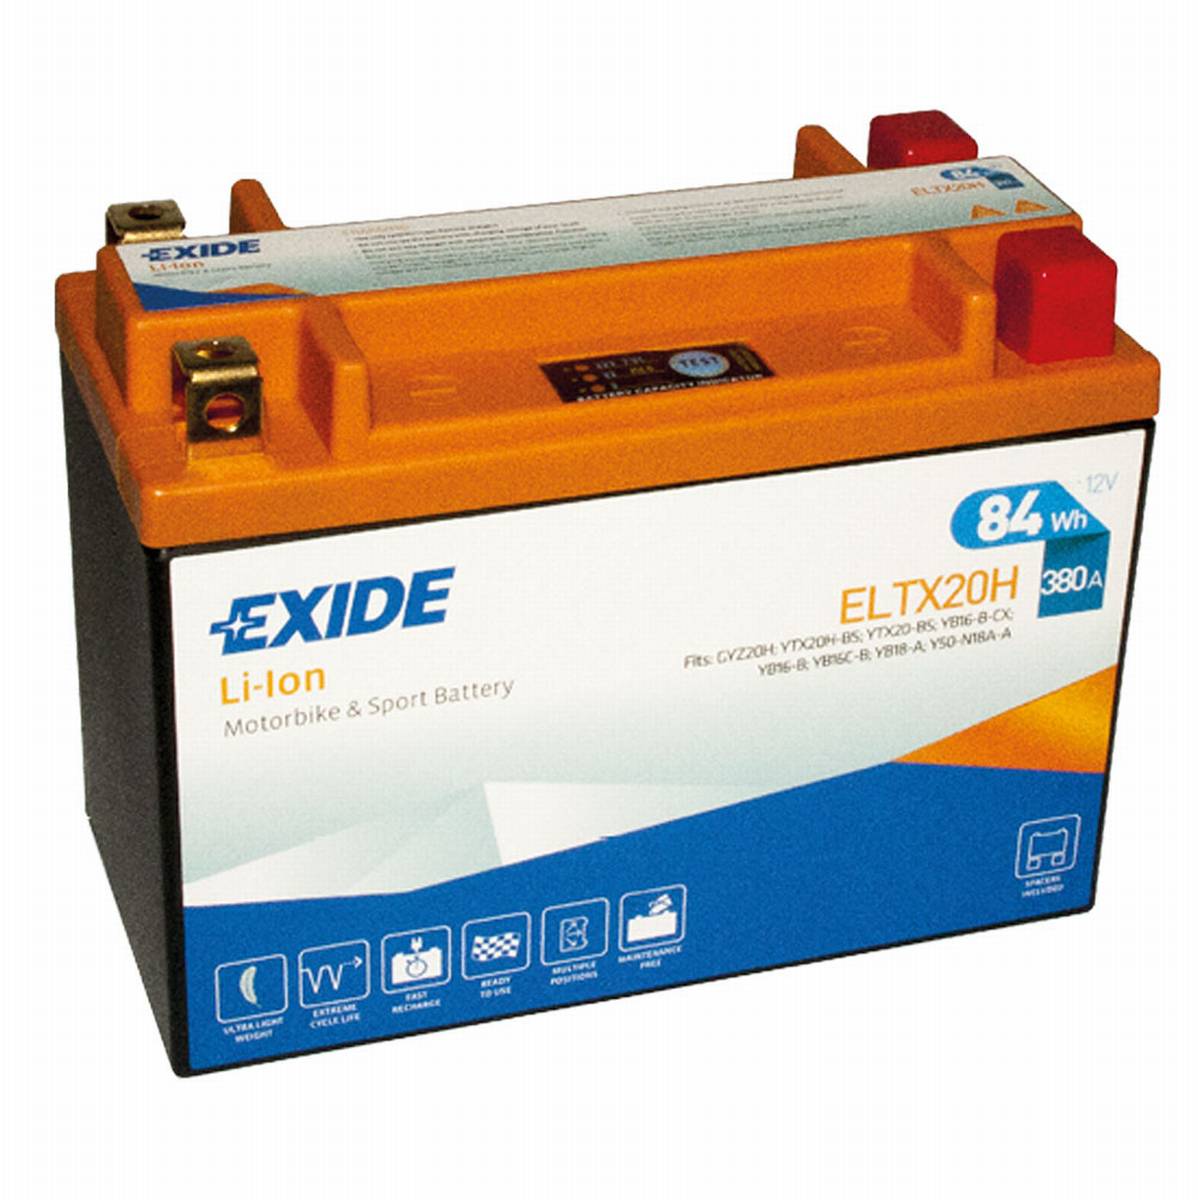 Exide ELTX20H Li-Ion Lithium Motorradbatterie 12V 7Ah 380A, Starterbatterie, Motorrad, Kfz, Batterien für